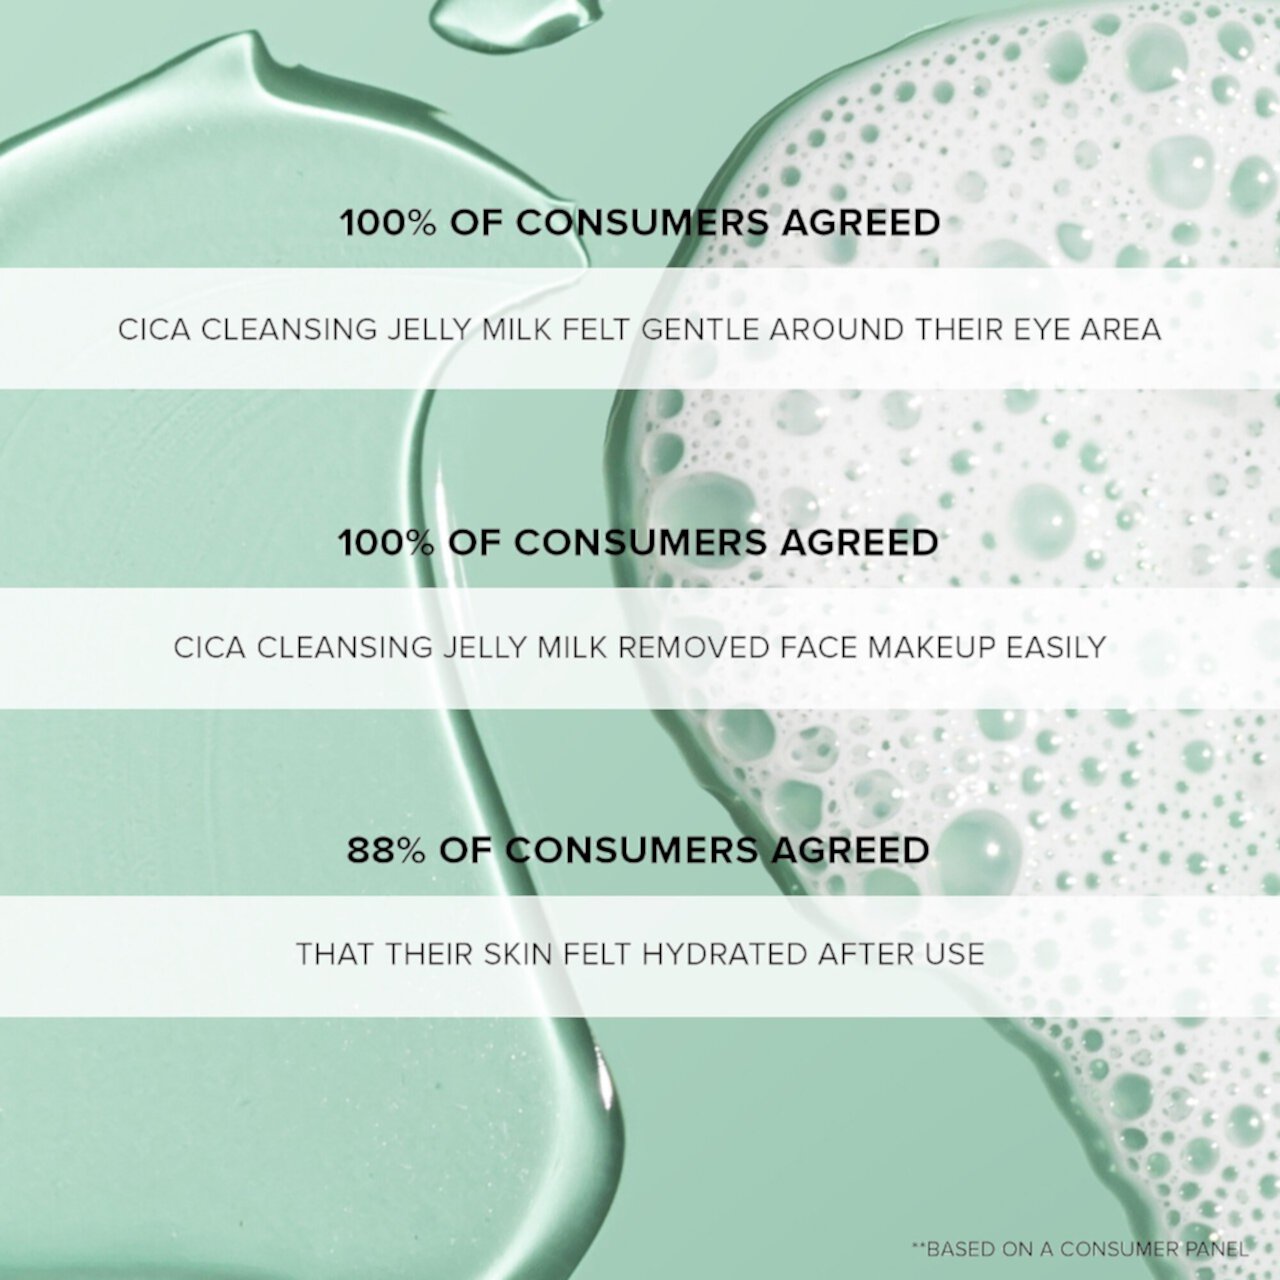 Cica Cleansing Jelly Milk Очищающее средство для лица NUDESTIX